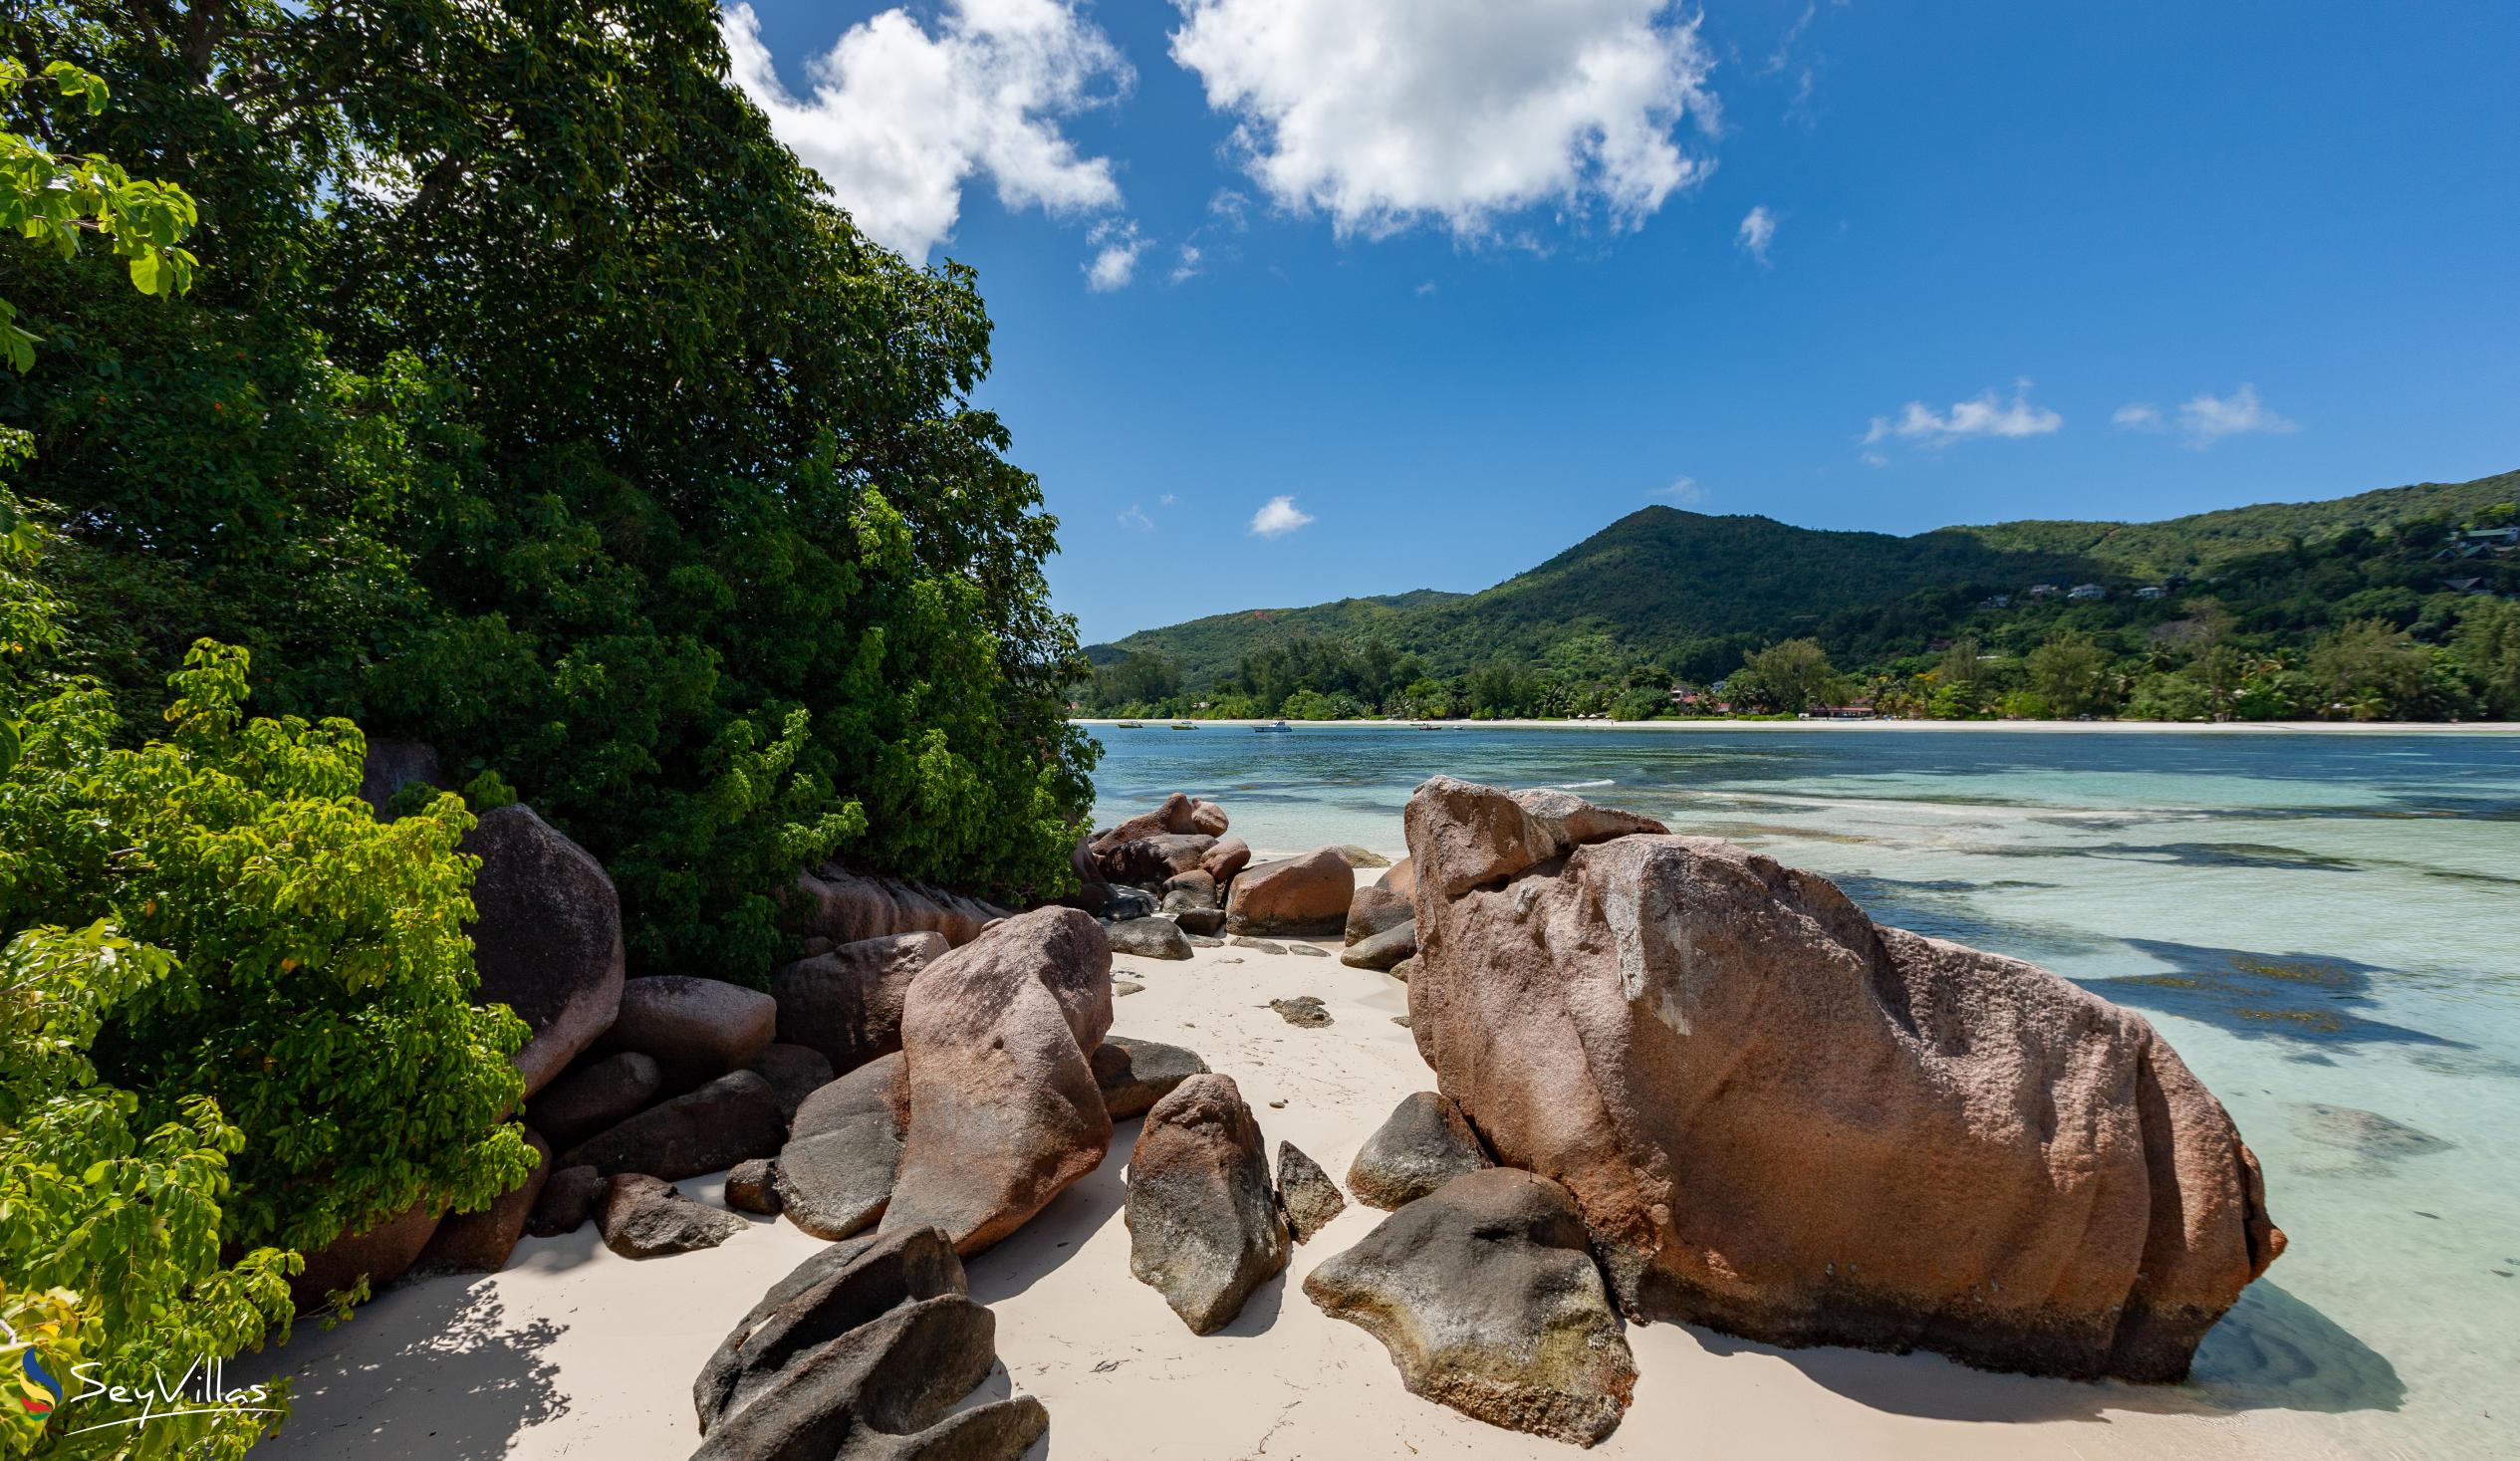 Photo 23: Chauve Souris Relais - Location - Praslin (Seychelles)